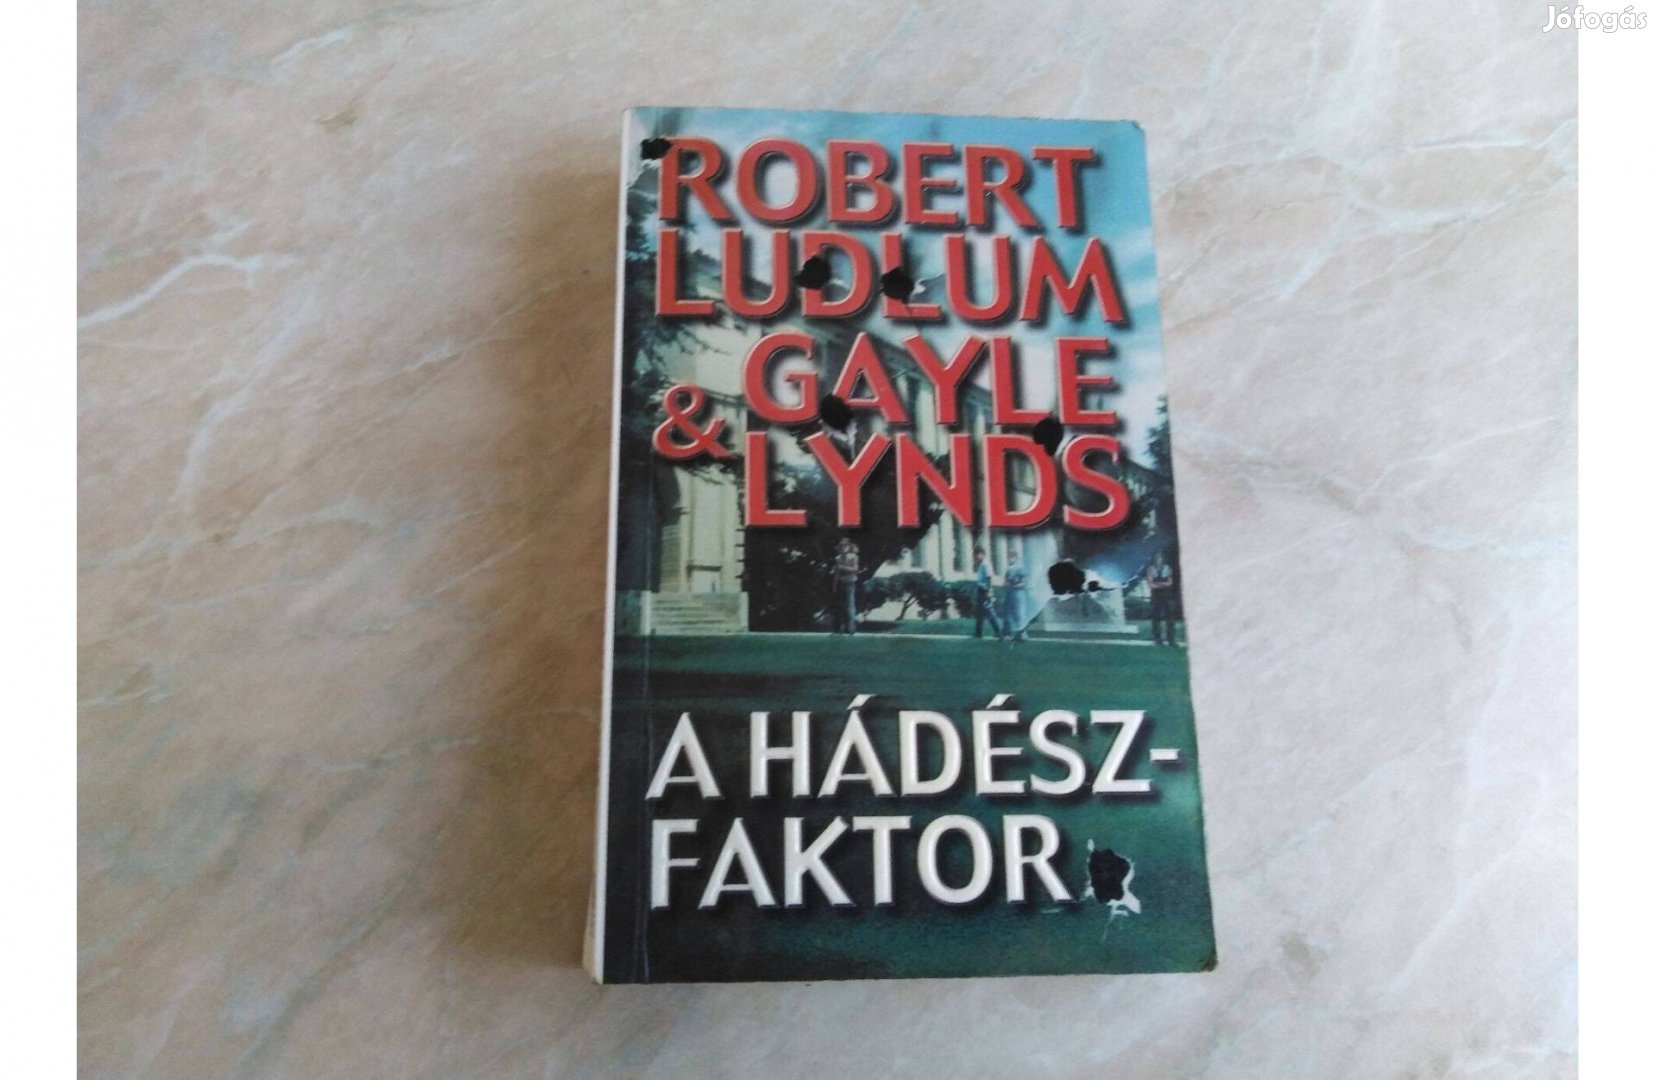 A Hádész-faktor - Robert Ludlum & Gayle Lynds